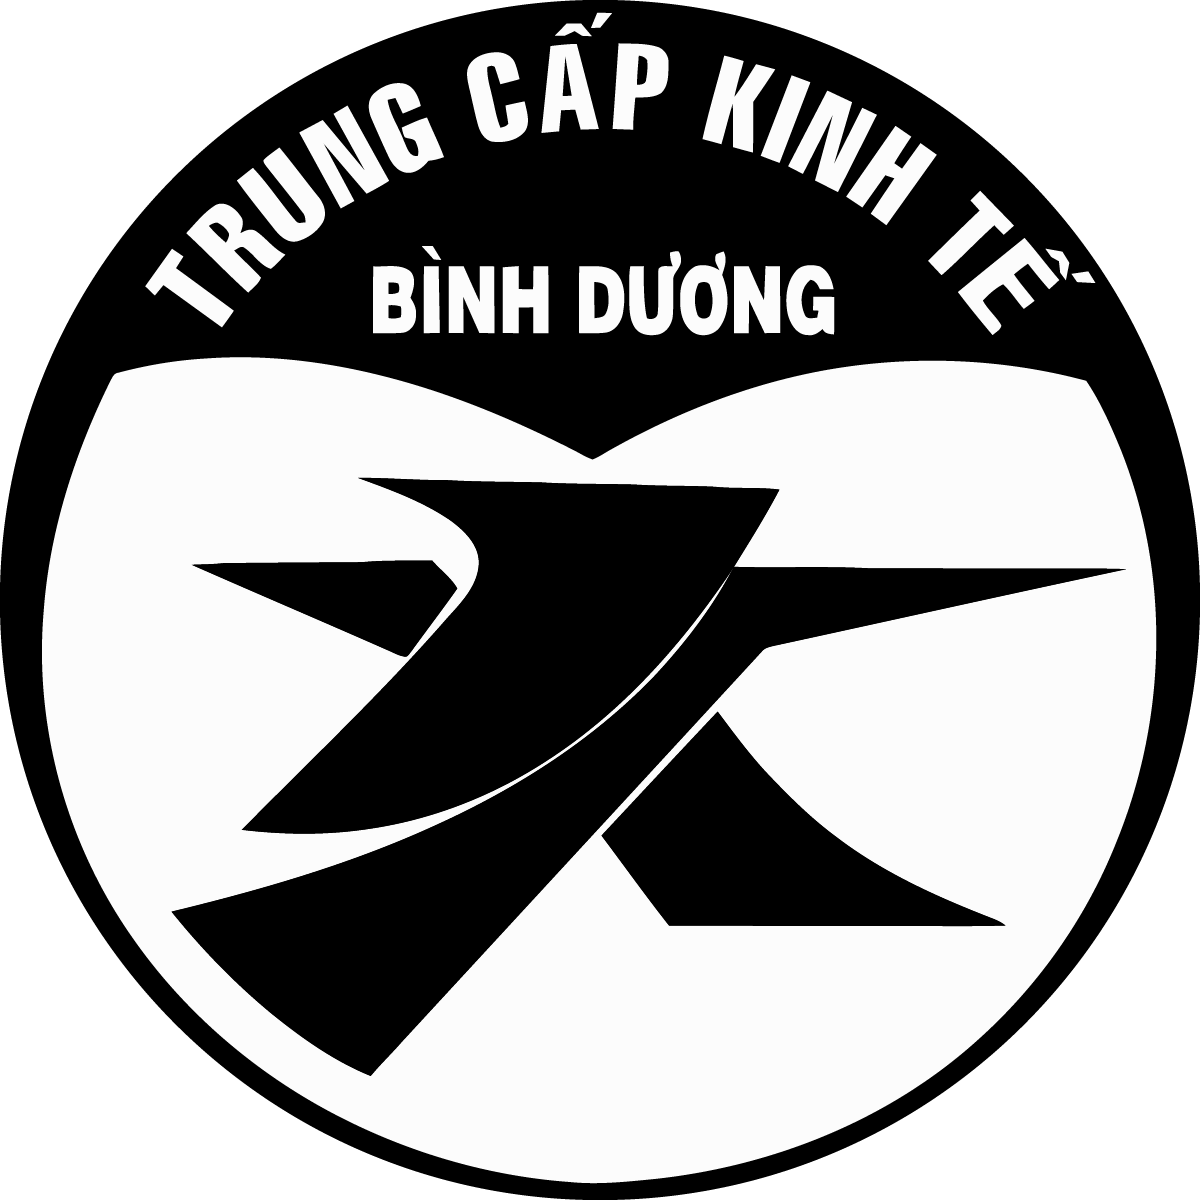 Logo Truong Trung cap Kinh te Binh Duong am bnar